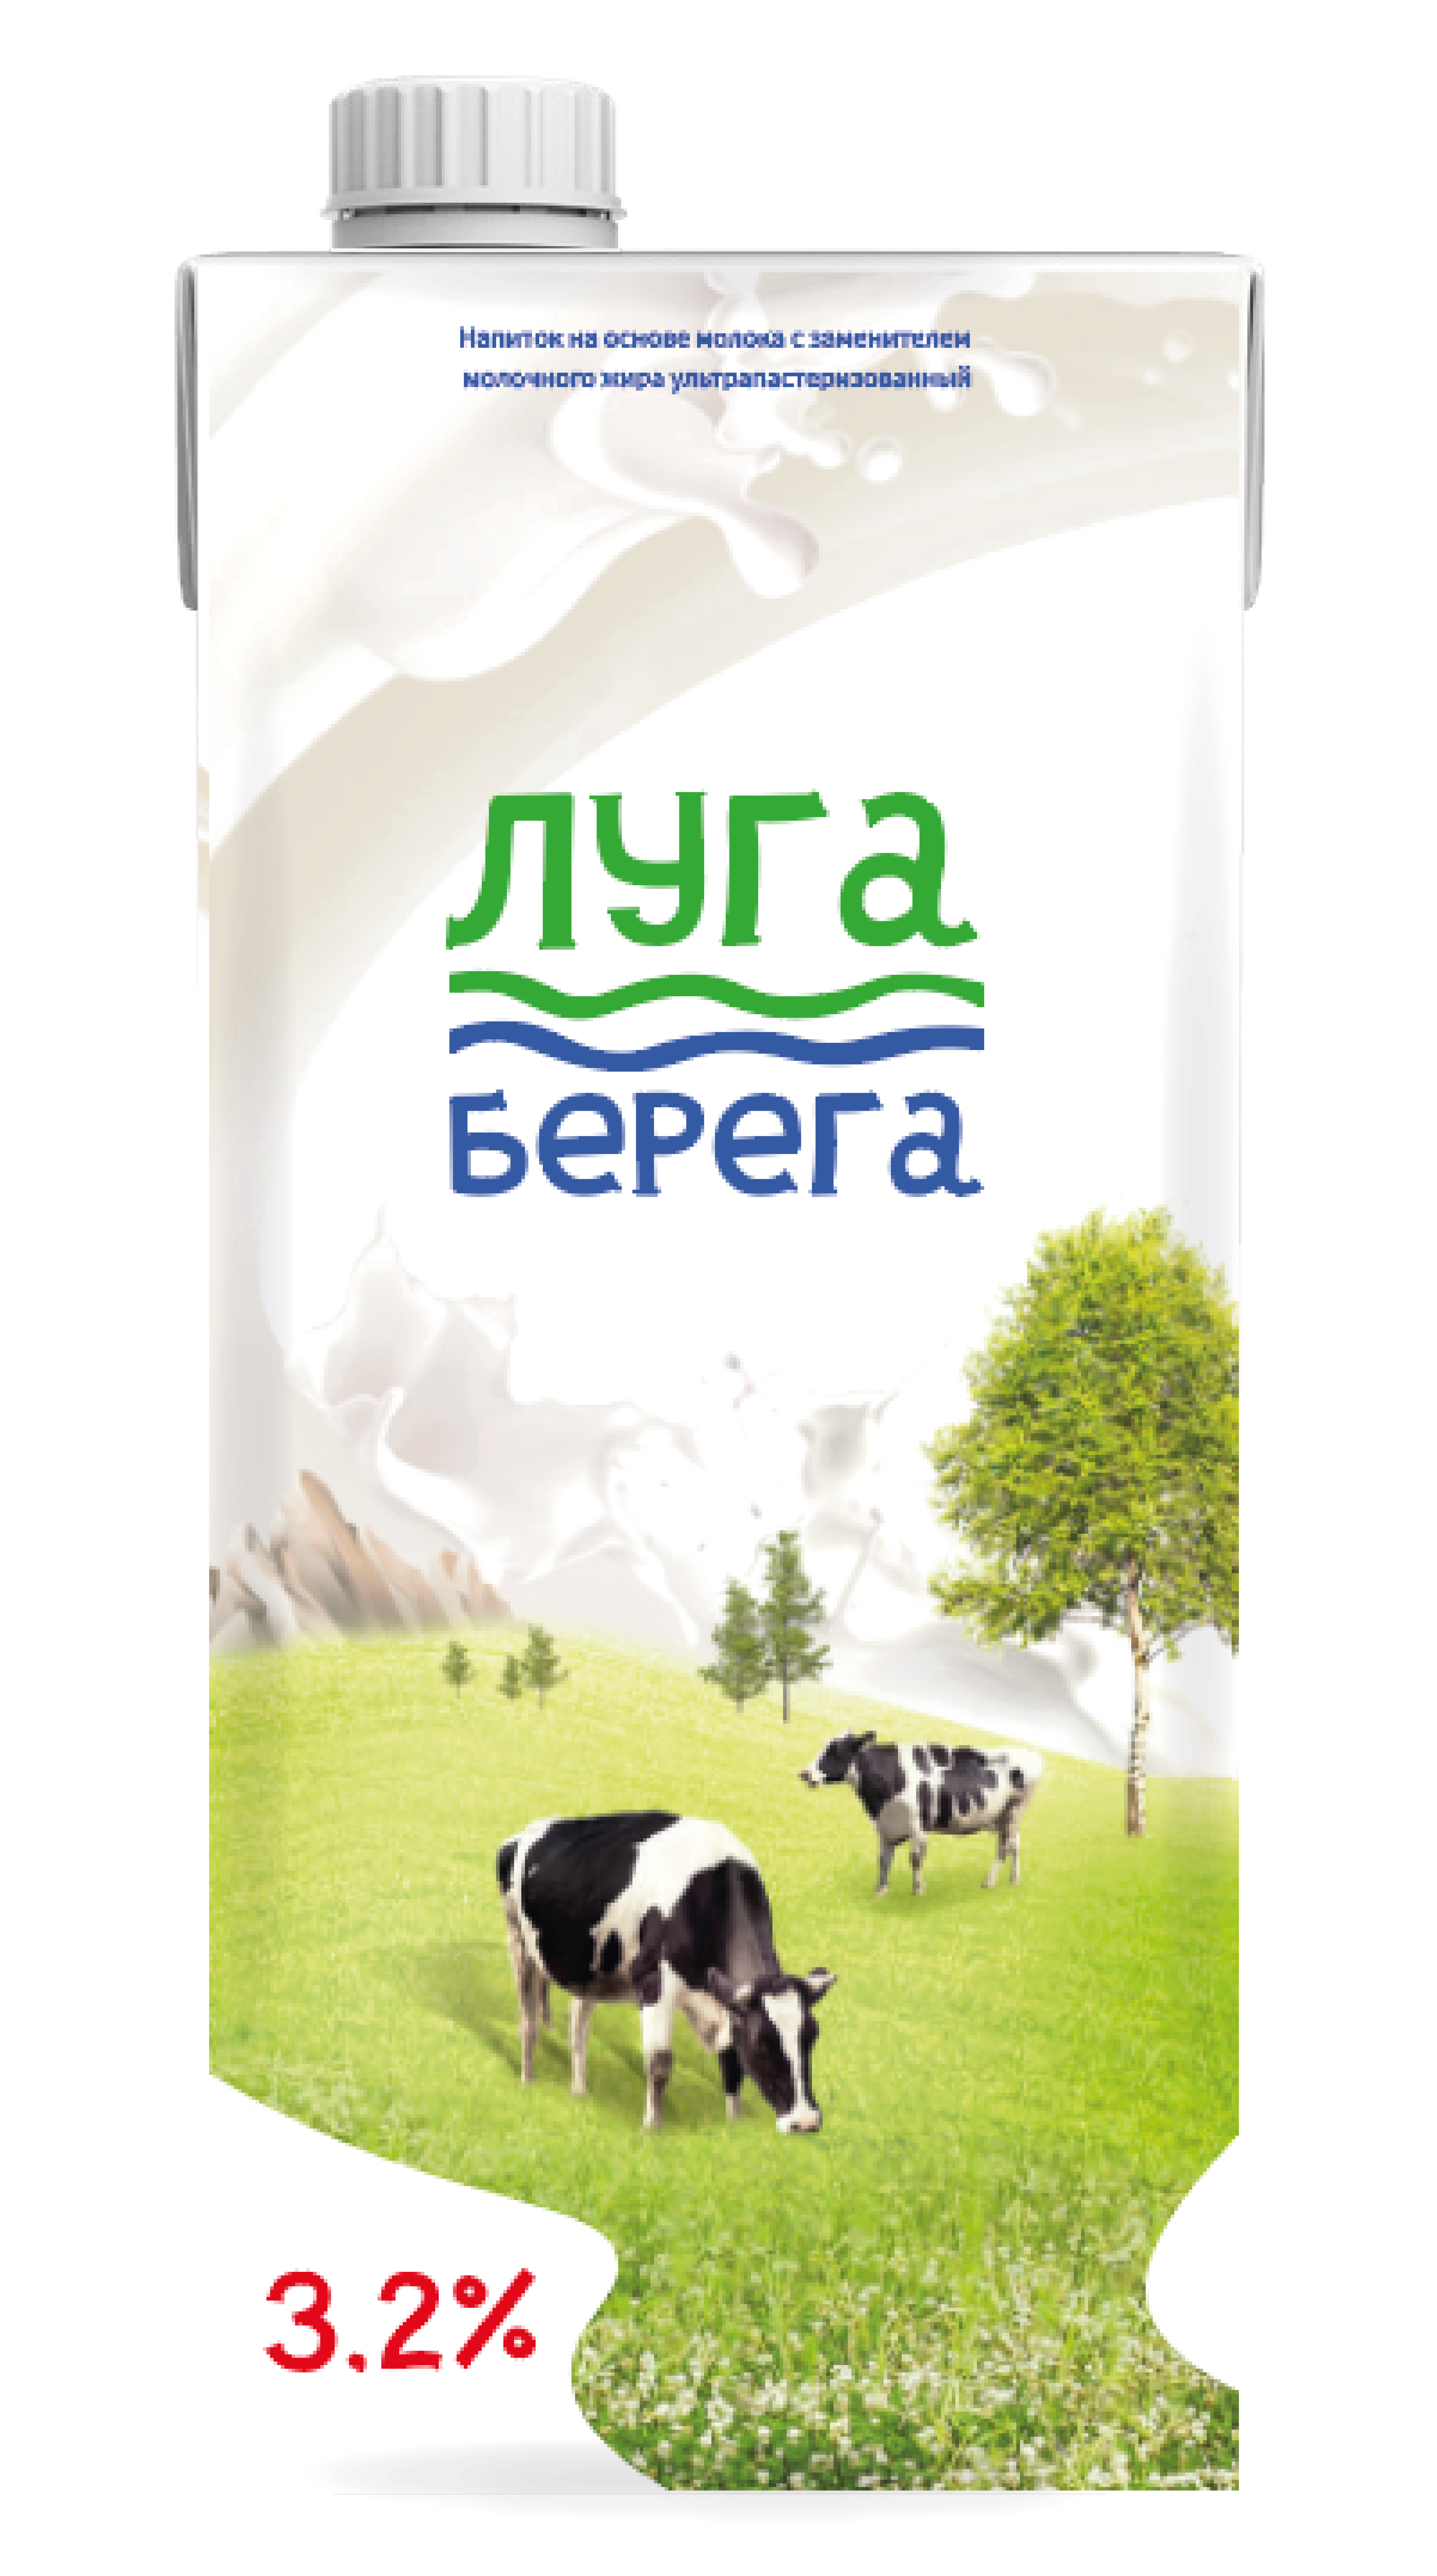 Молочный напиток "Луга Берега" 1л МДЖ 3,2% ООО «МЛАДА» 